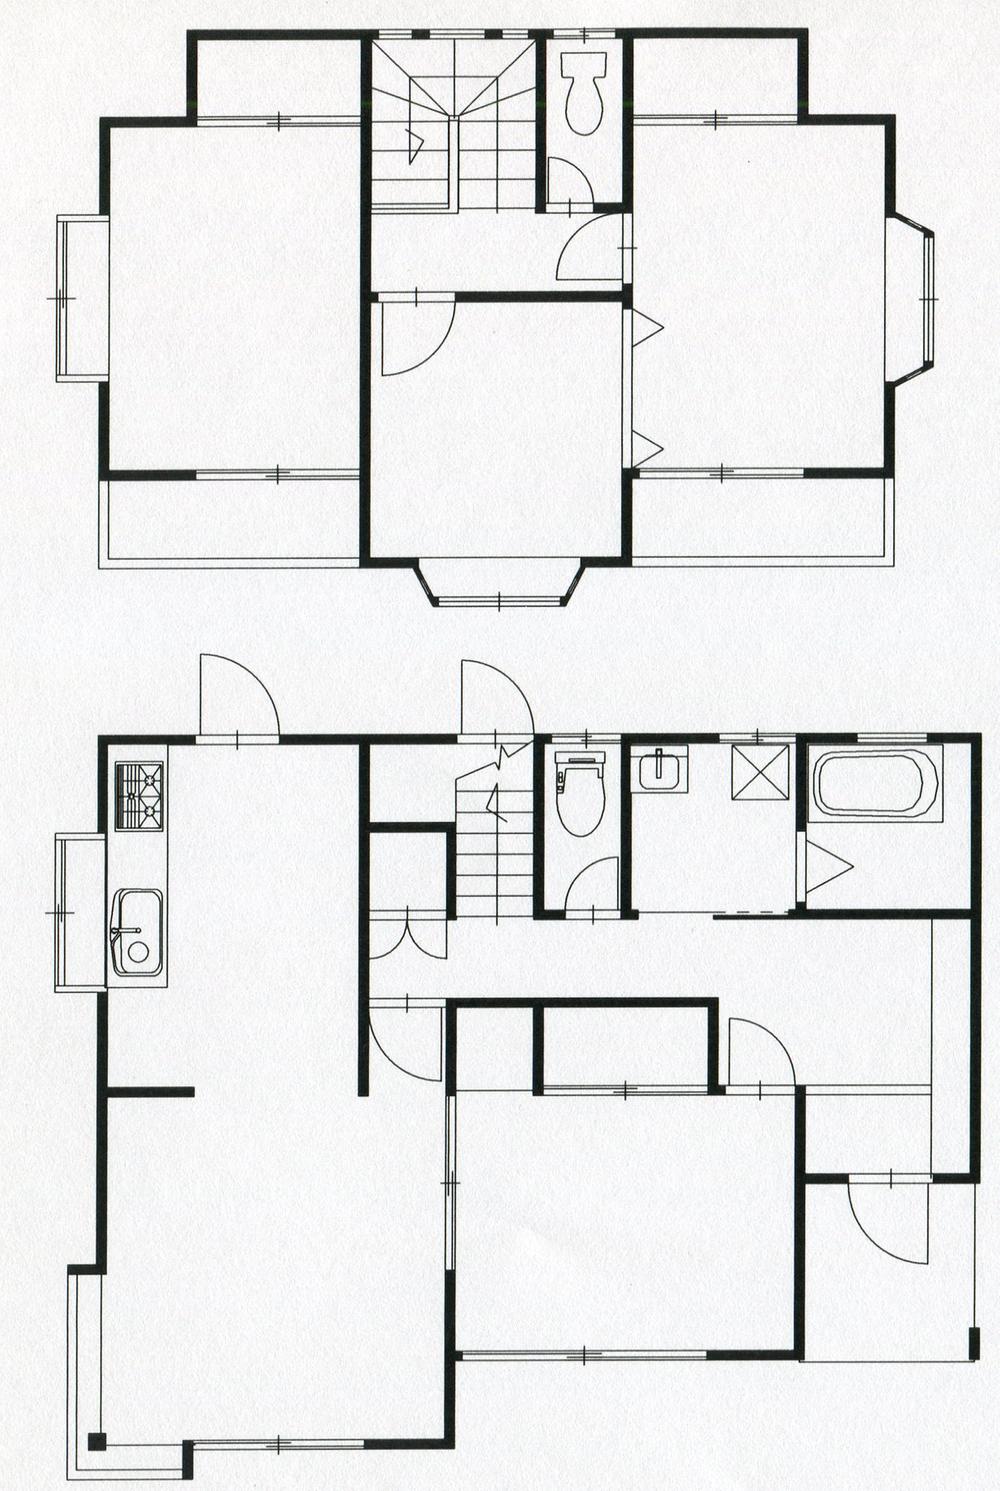 Floor plan. 13.8 million yen, 4LDK, Land area 200.3 sq m , Building area 96.05 sq m